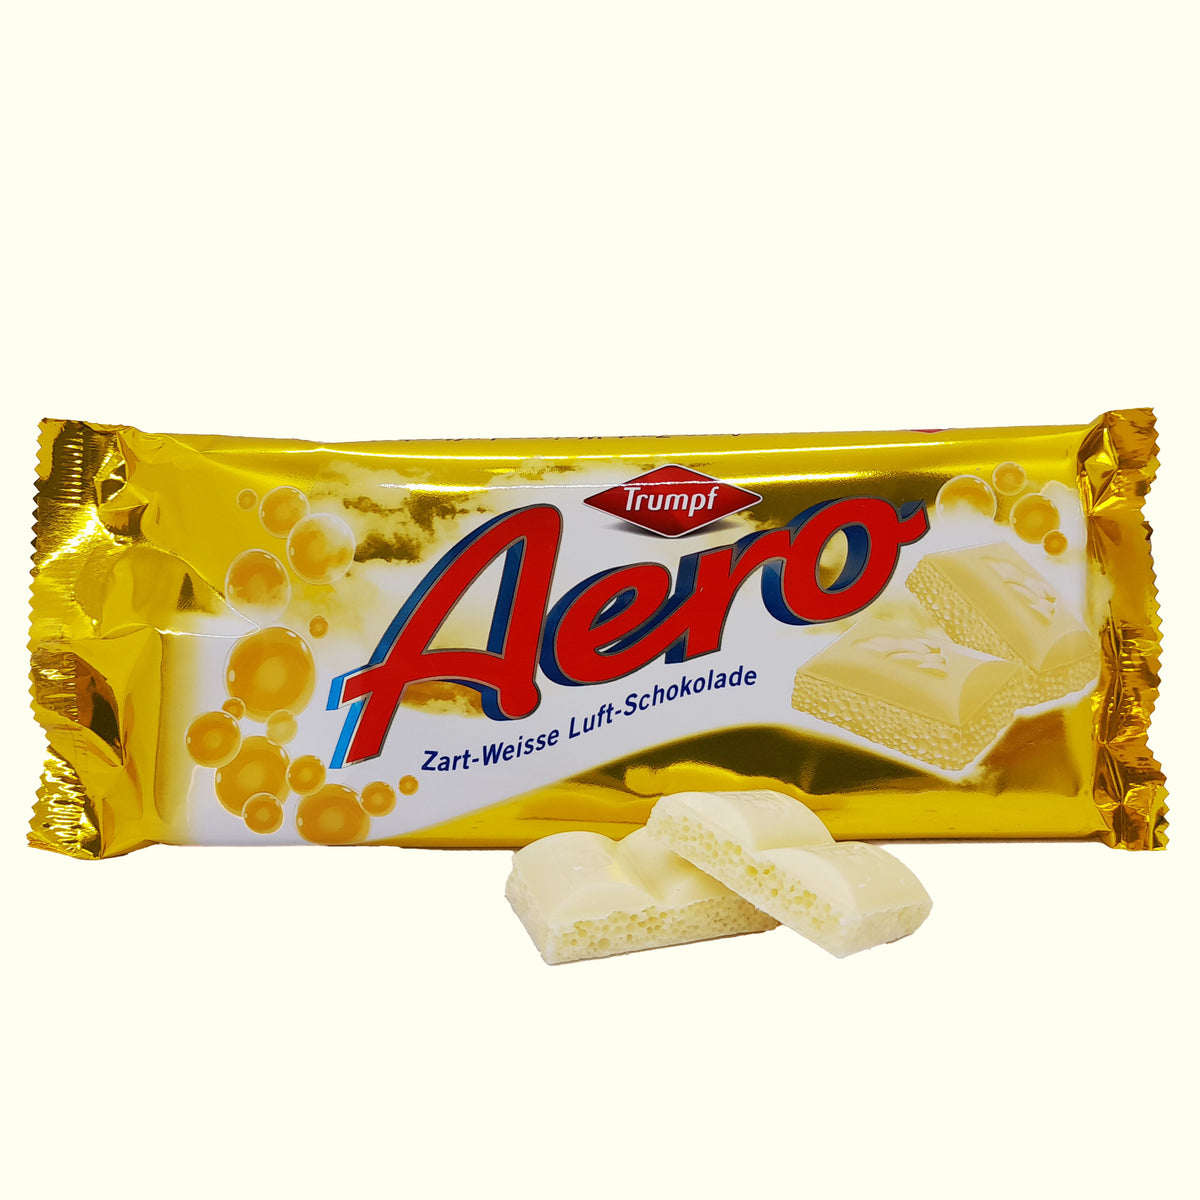 Aero Zart- Weisse Luft- Schokolade 100g